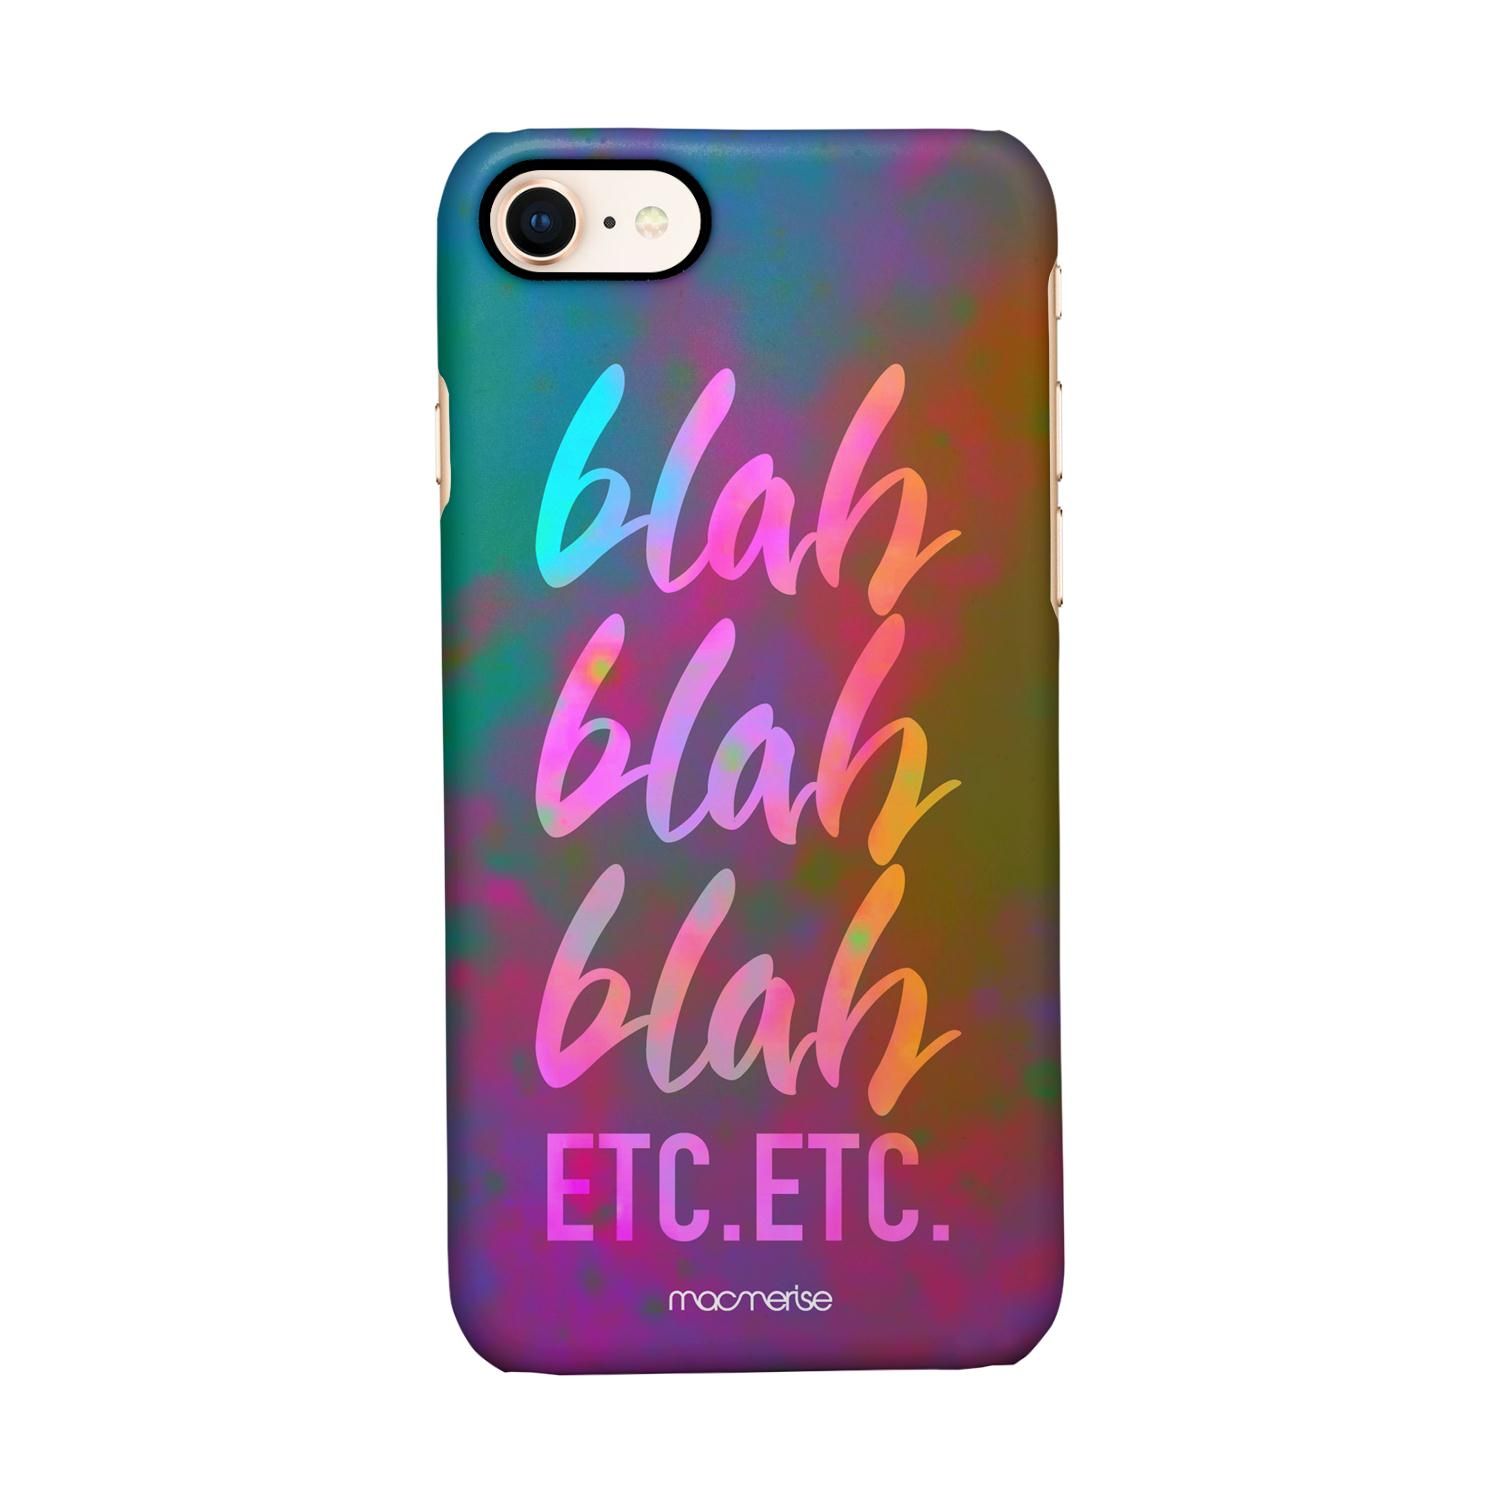 Buy Blah Blah - Sleek Phone Case for iPhone 7 Online